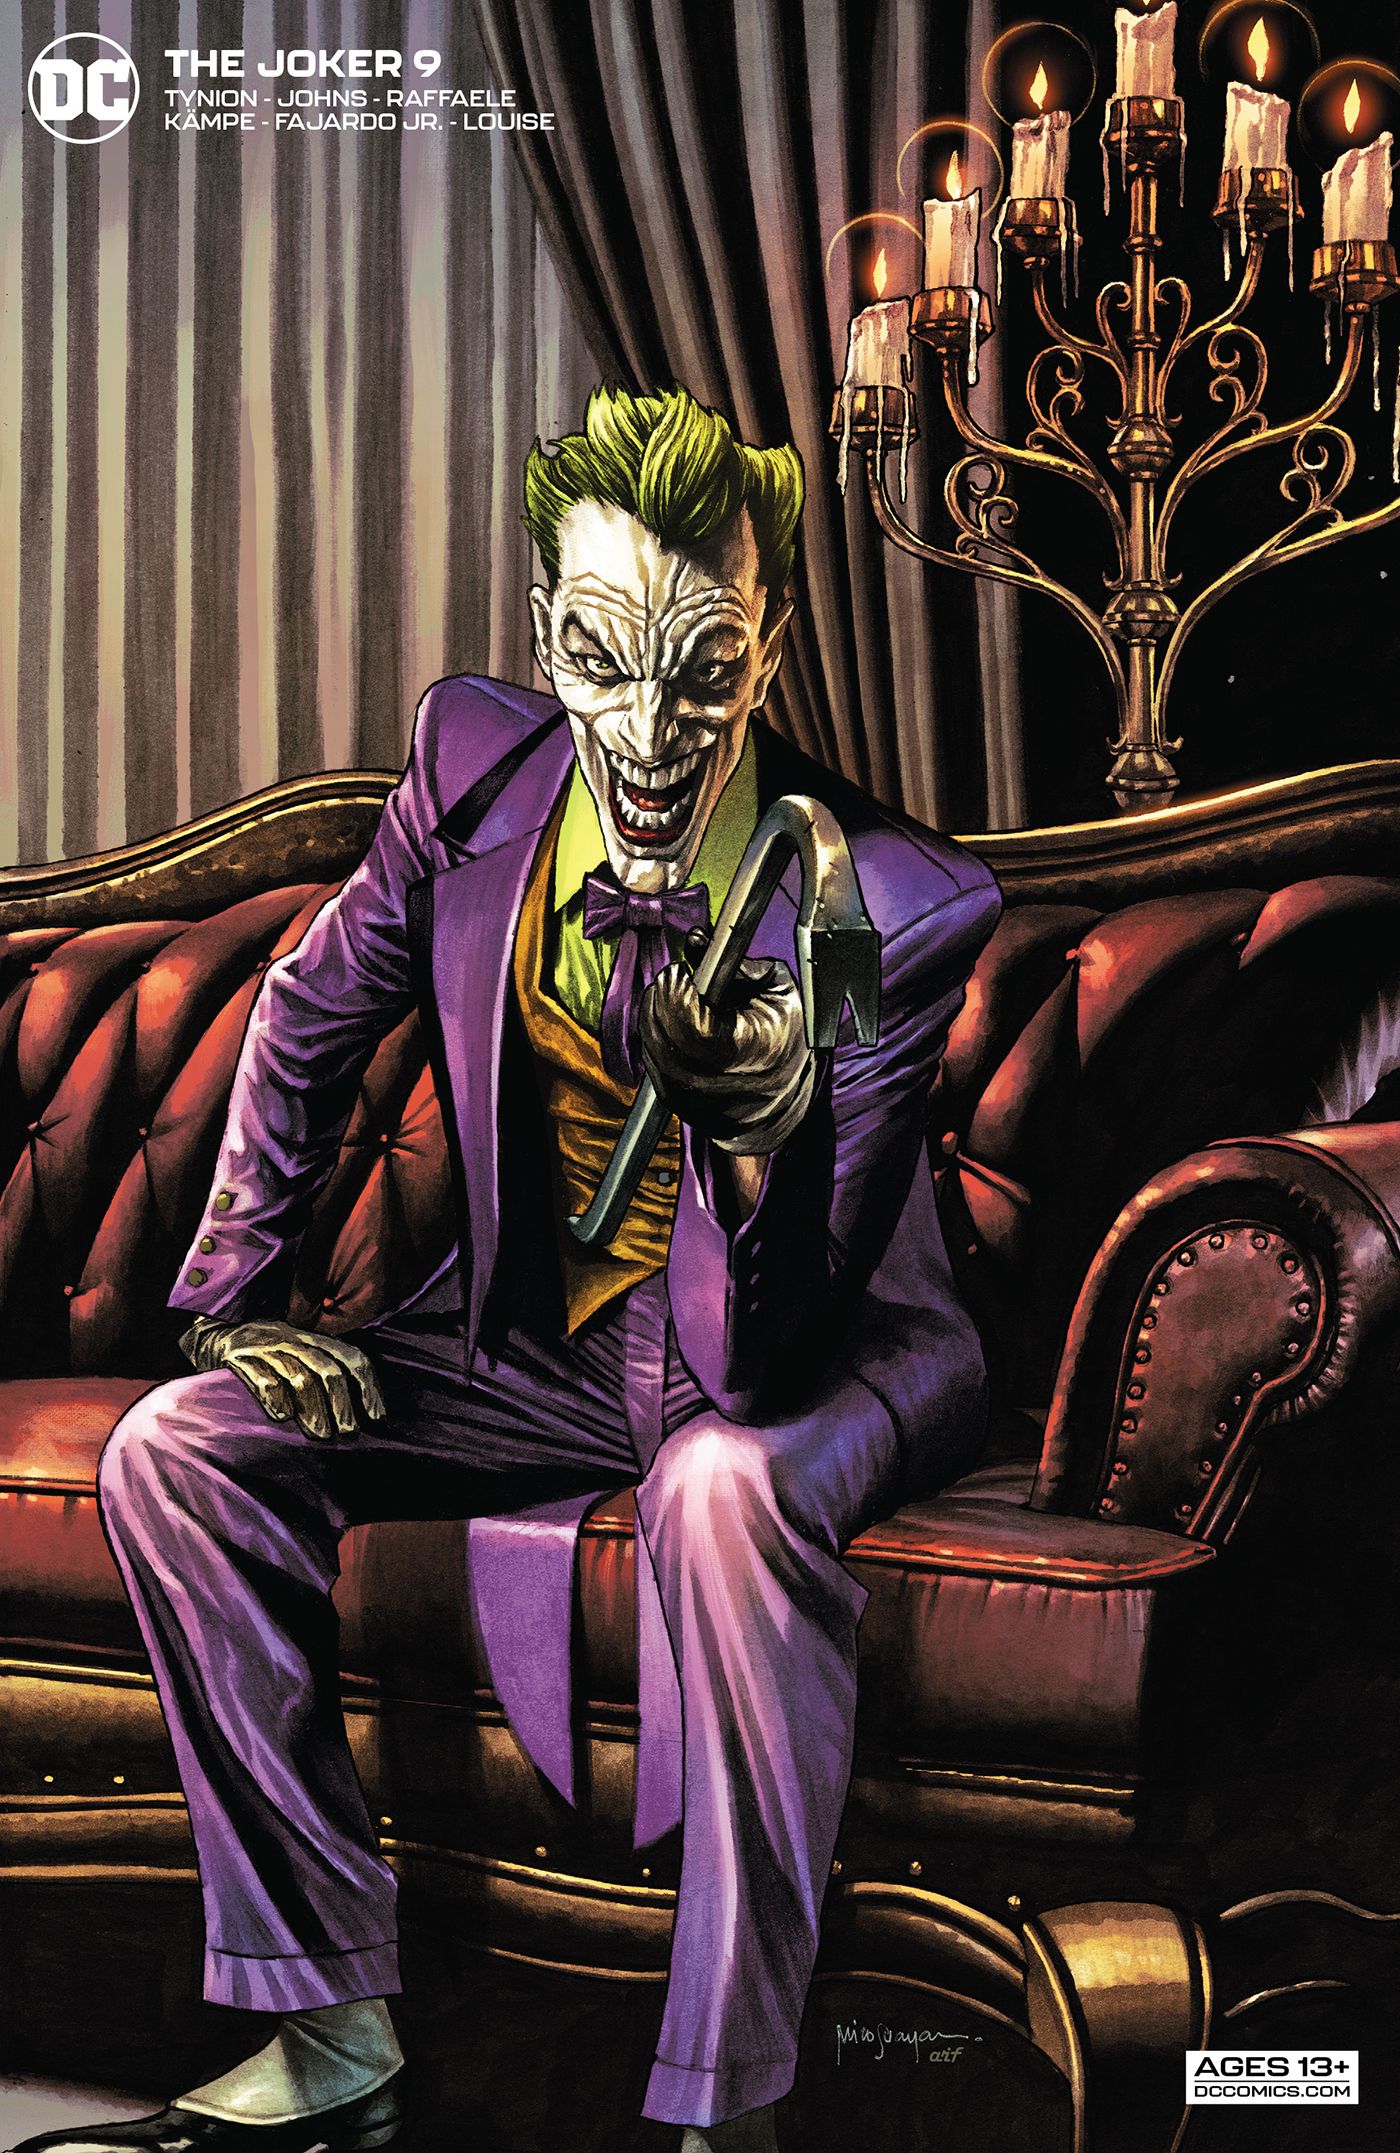 The Joker #9 2